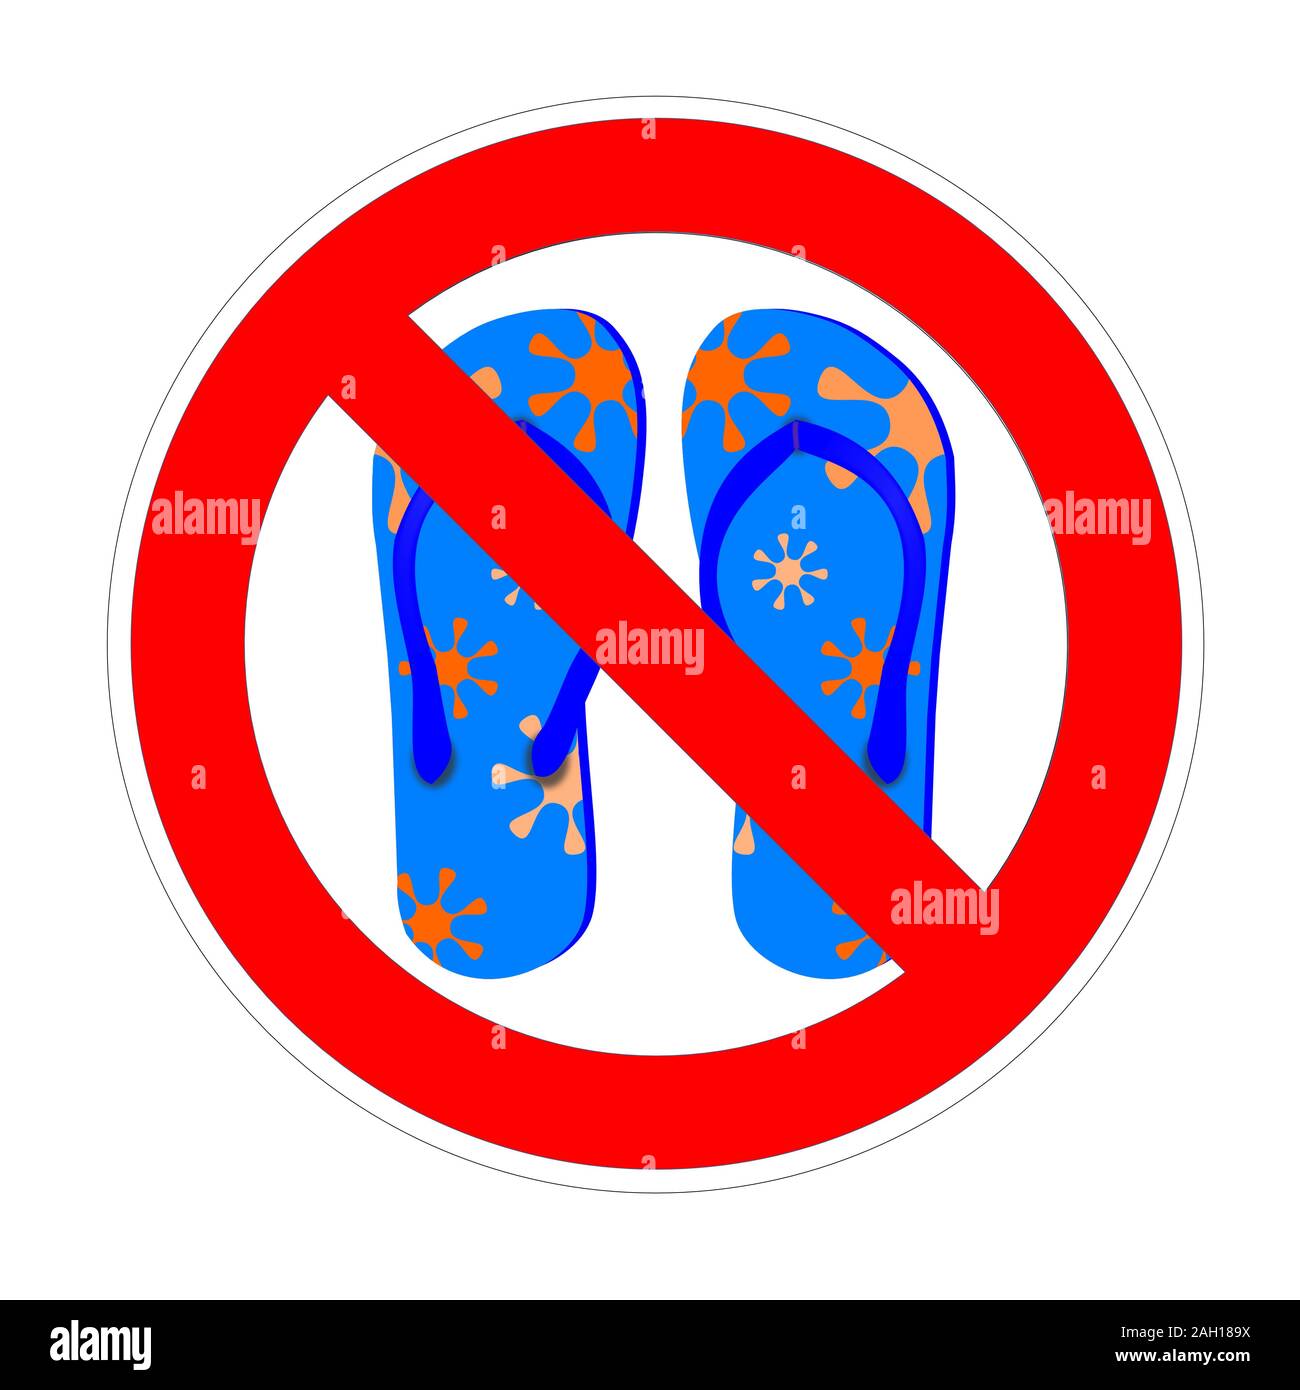 No Flip Flops Or Sandals Sign Stock Illustration - Download Image Now -  Forbidden, Sandal, Barefoot - iStock